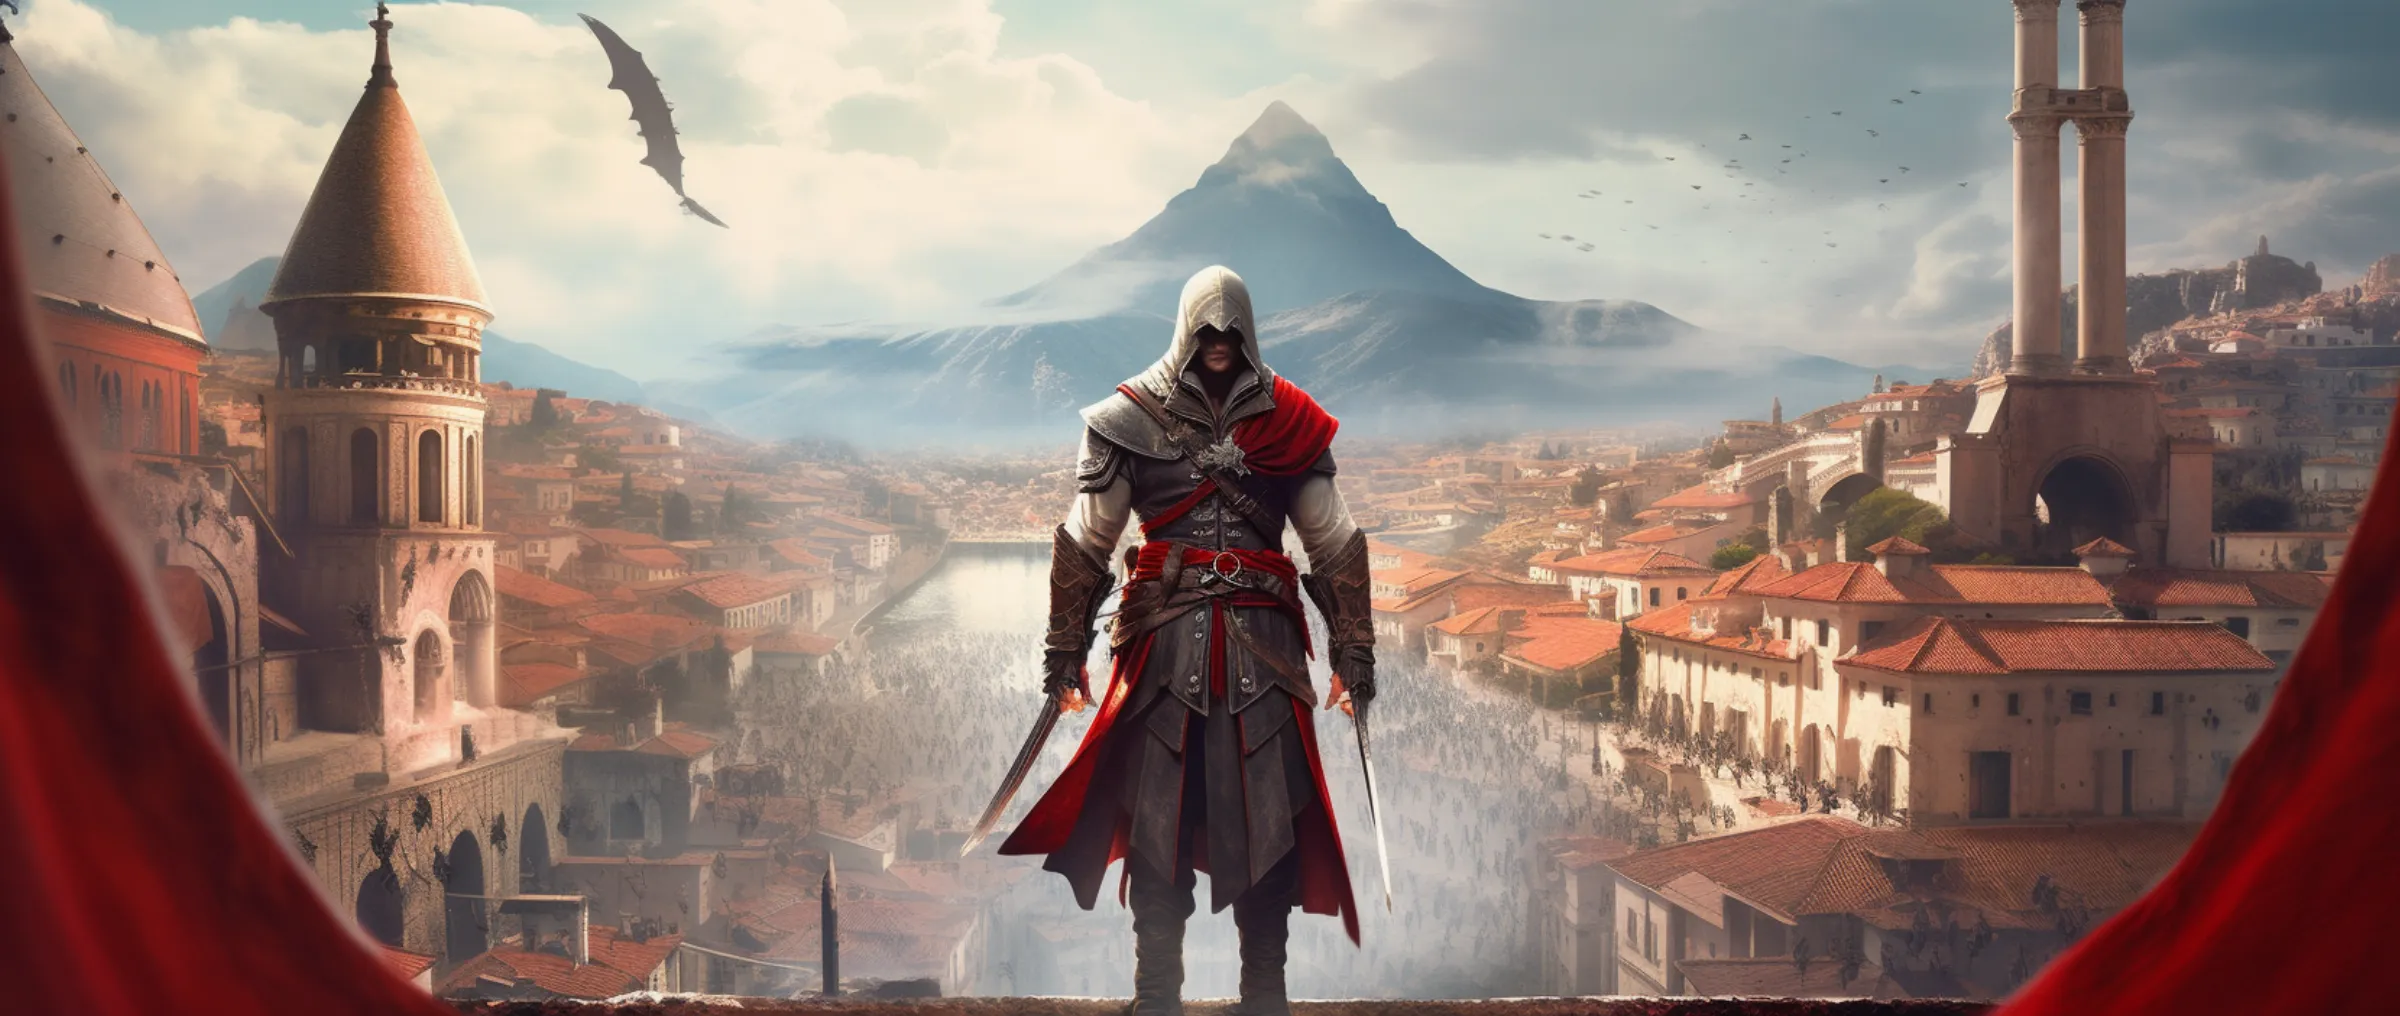 Ubisoft представит NFT-коллекцию, вдохновленную Assassin's Creed